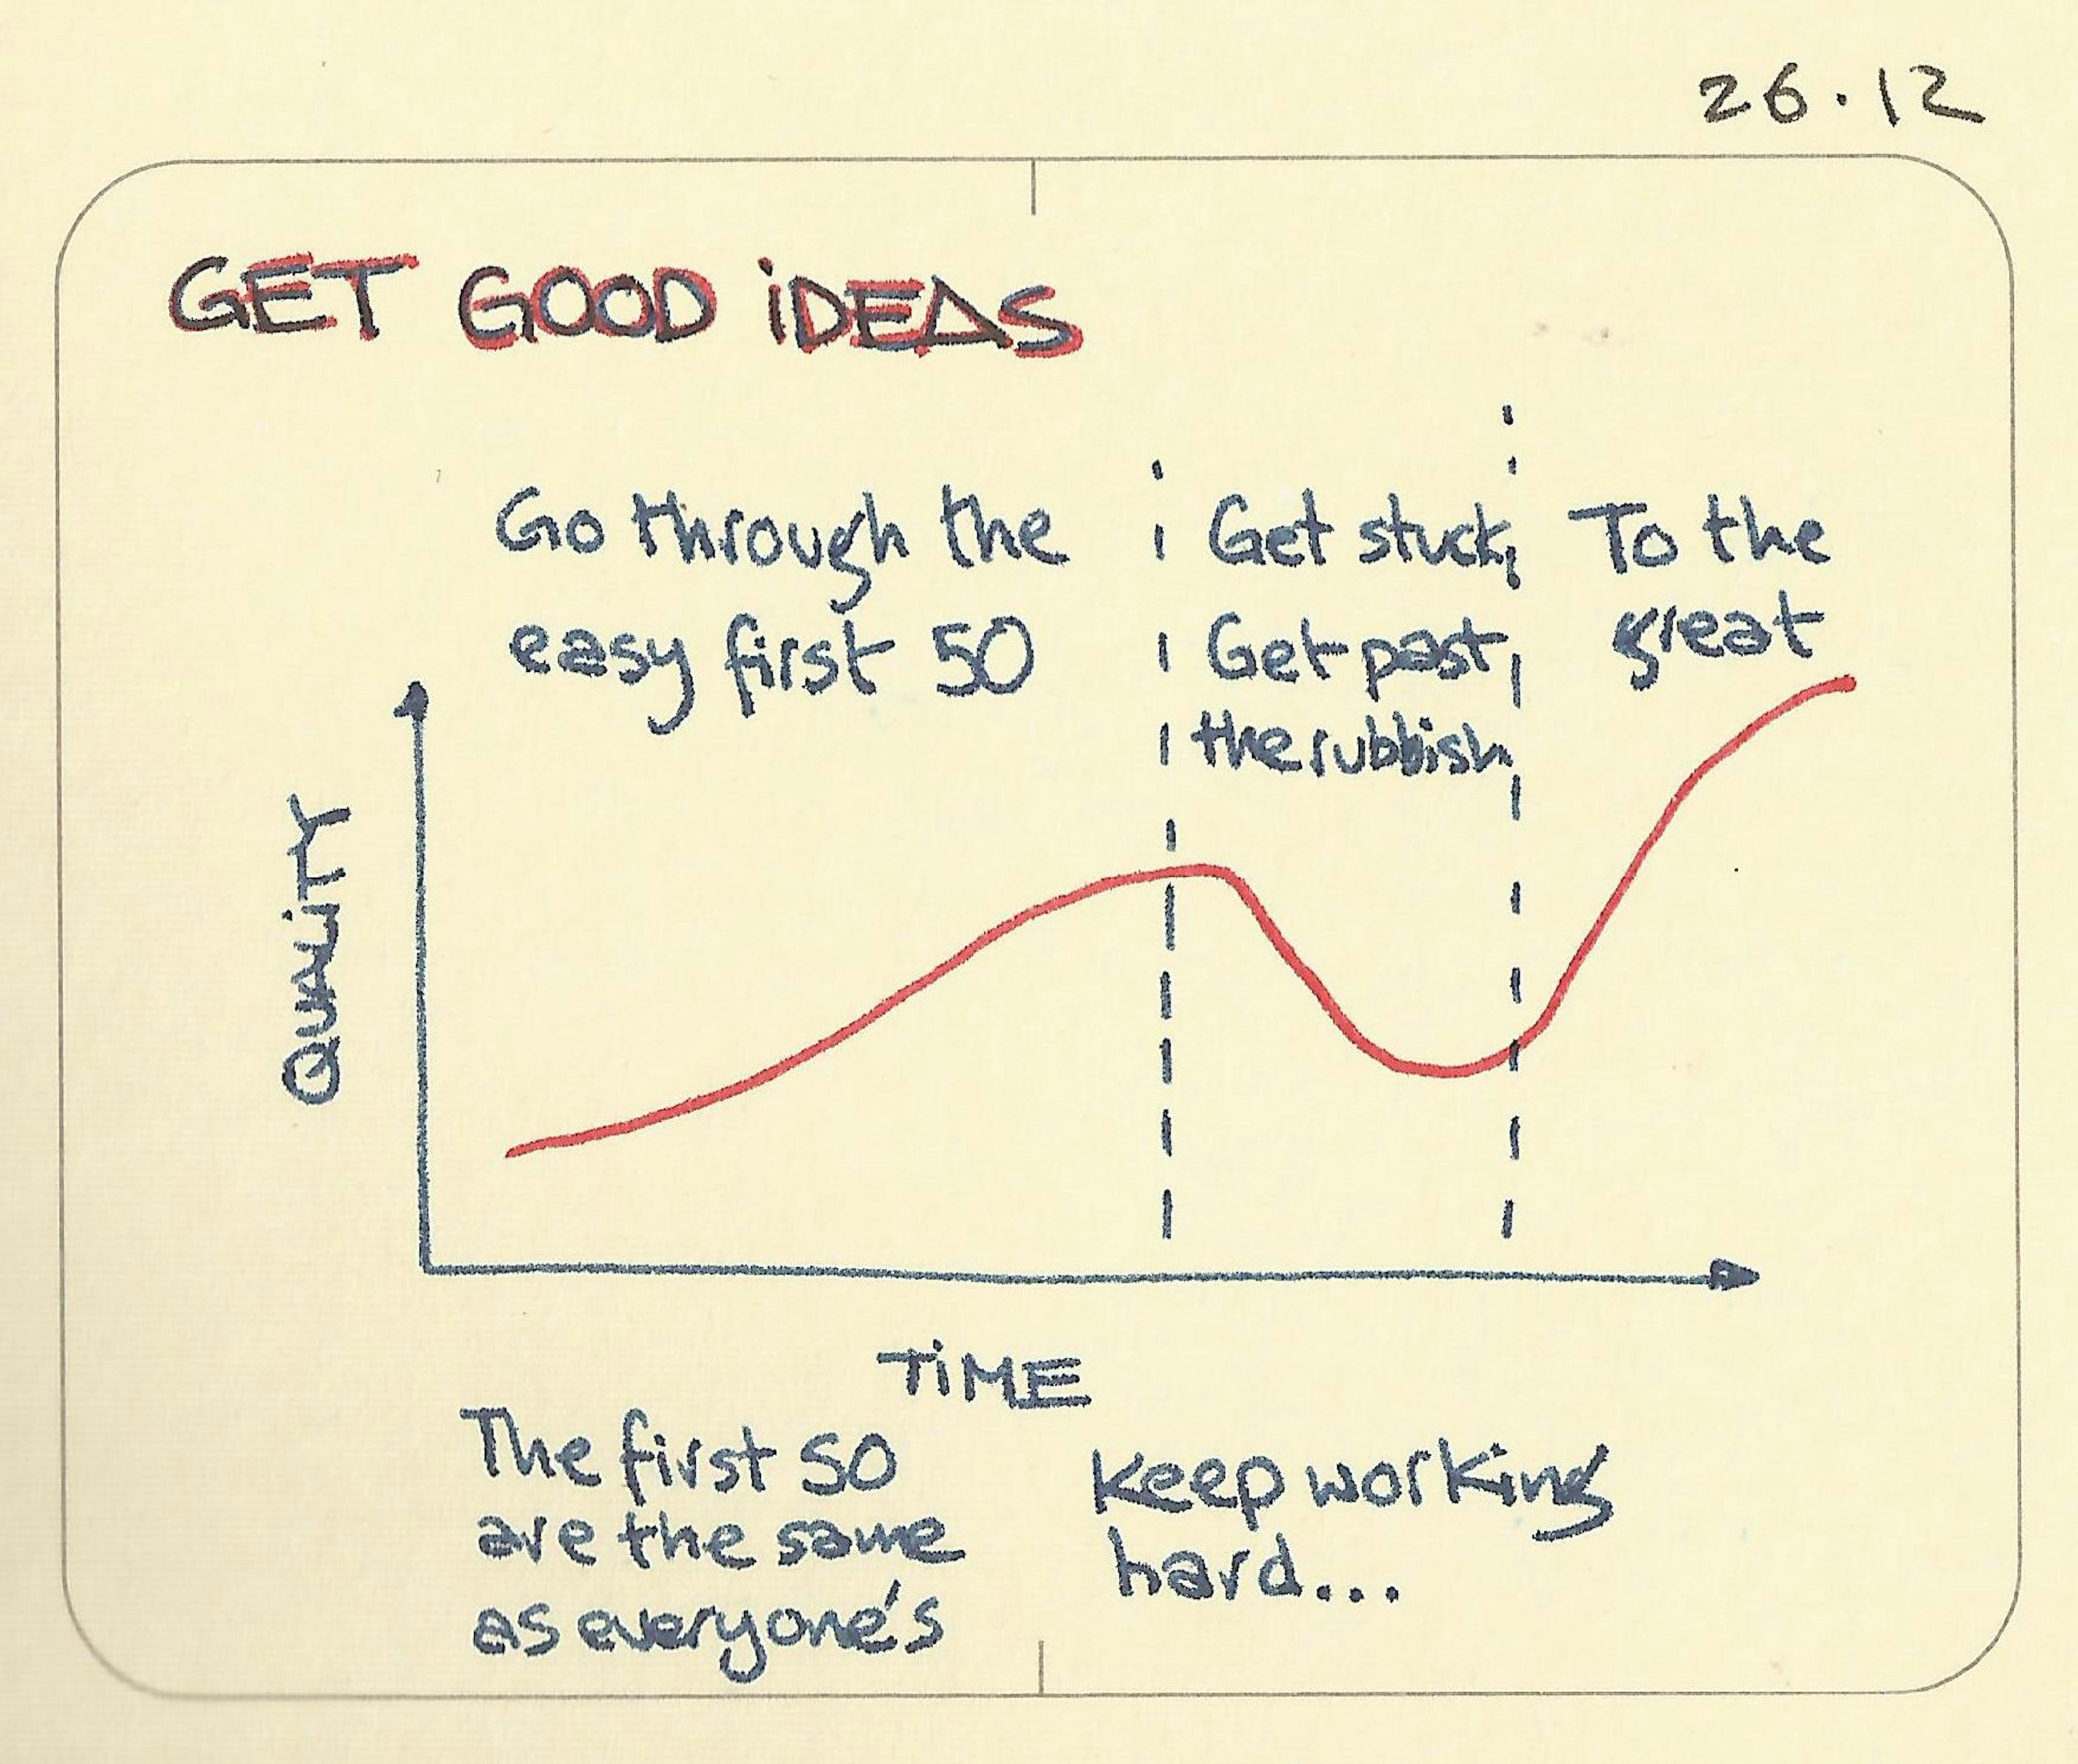 Get good ideas - Sketchplanations